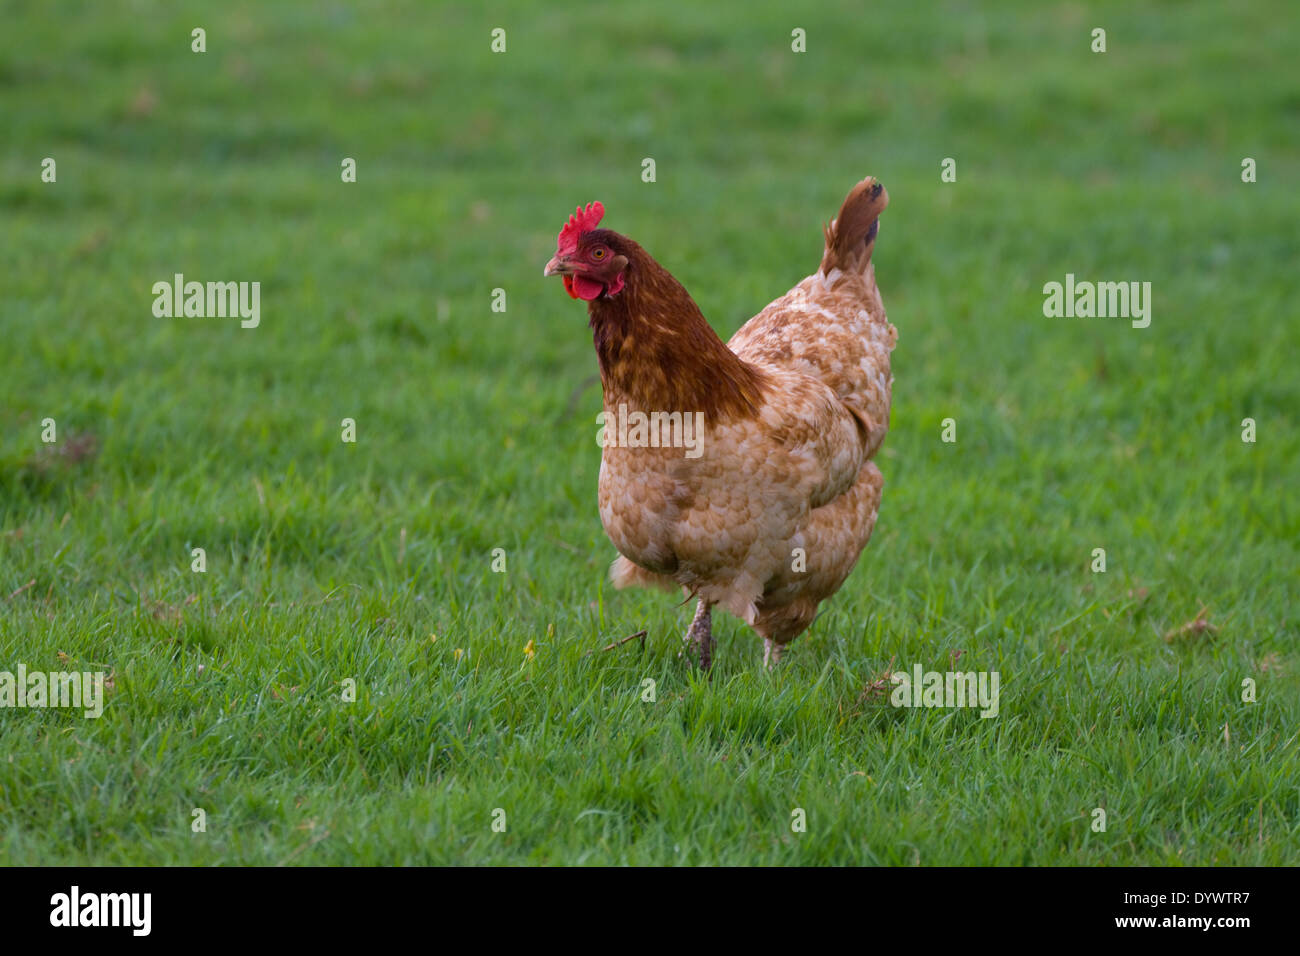 Single brown  hen in field Stock Photo